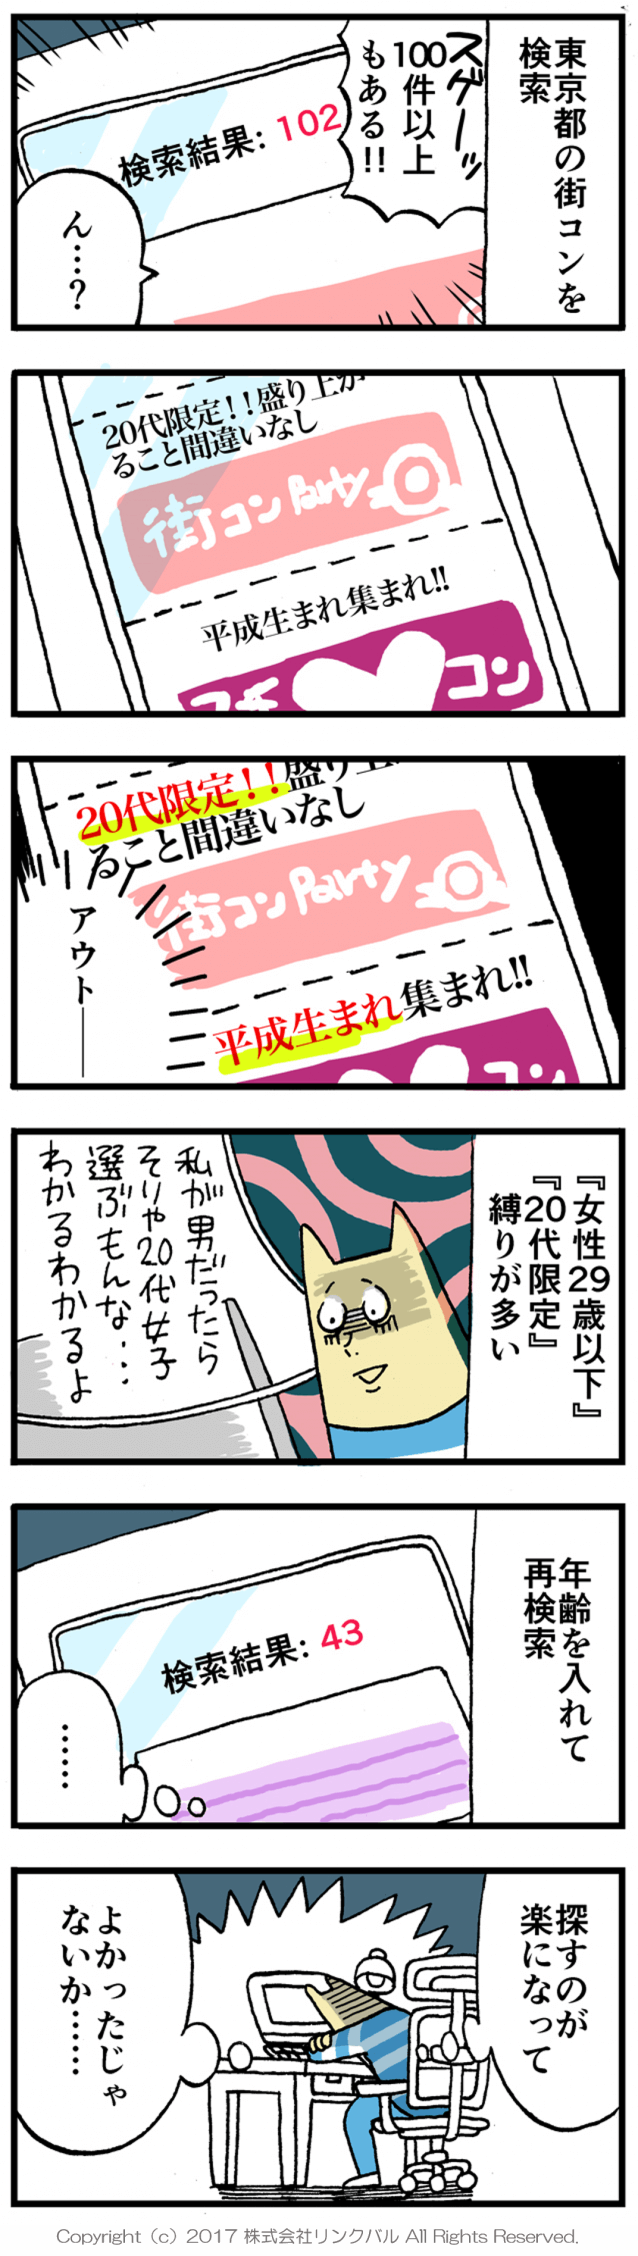 【婚活漫画】アラサー街コン物語・第3話「イベント検索」